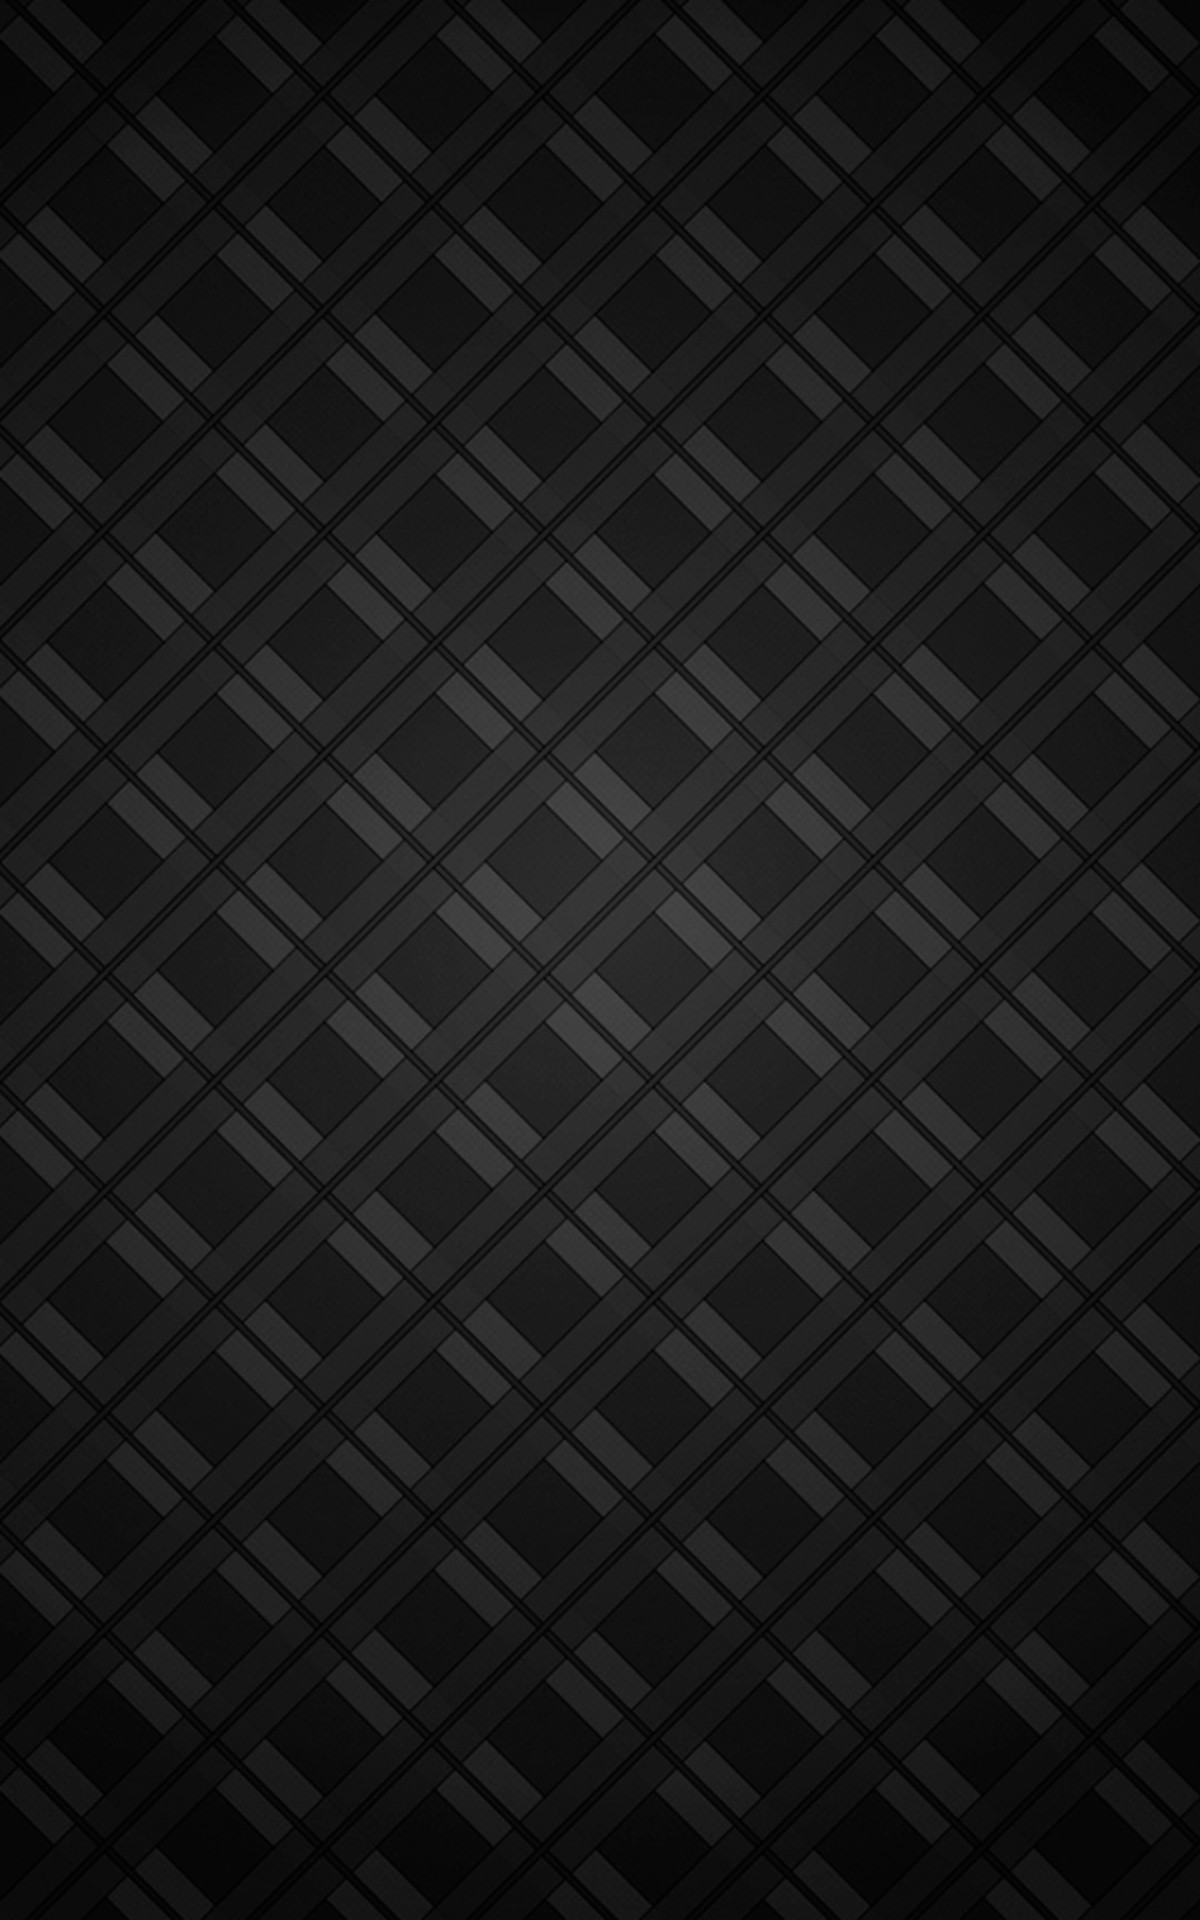 General 1200x1920 pattern monochrome minimalism digital art portrait display texture